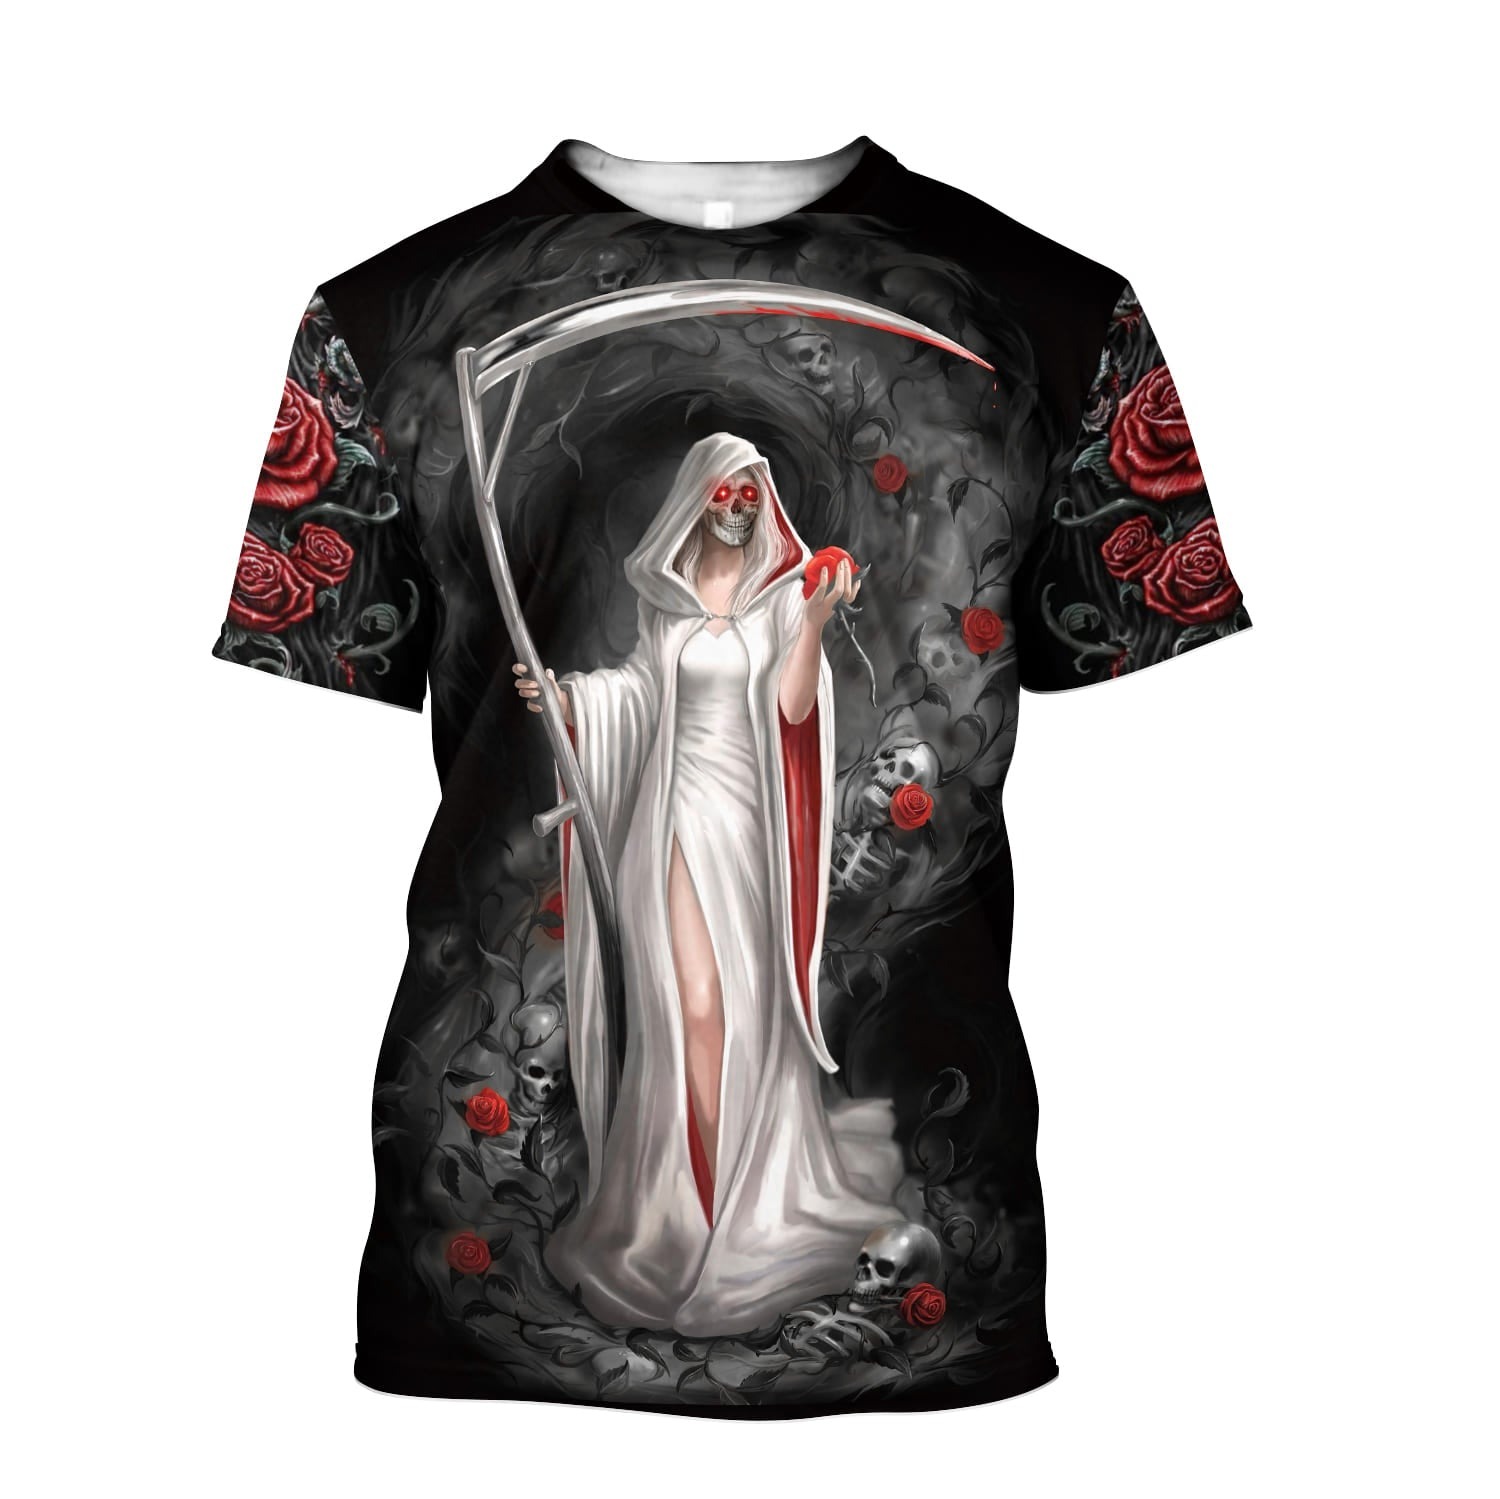 Grim Reaper Girl Roses T shirt